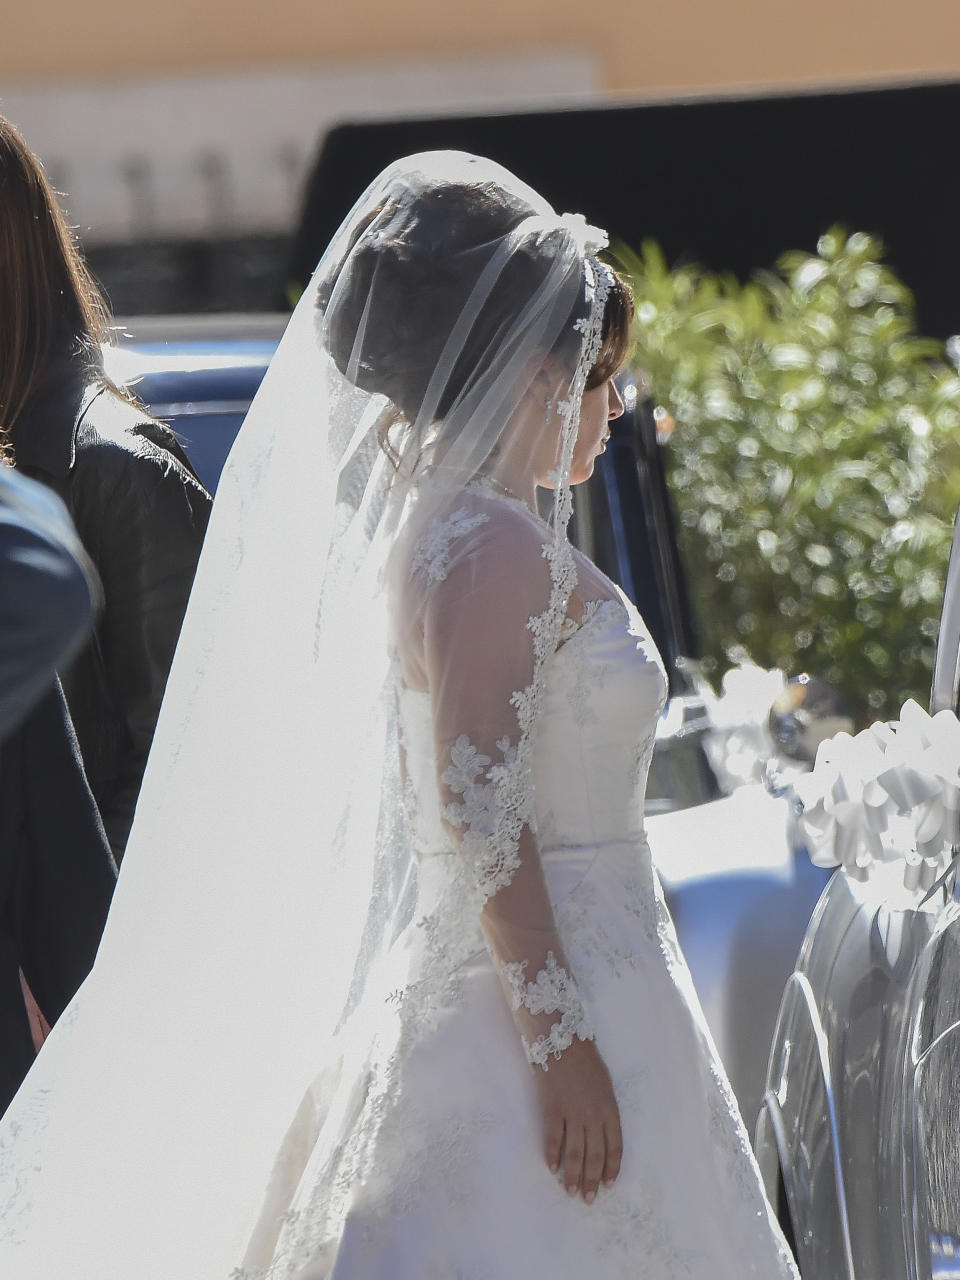 Lady Gaga in wedding dress for 